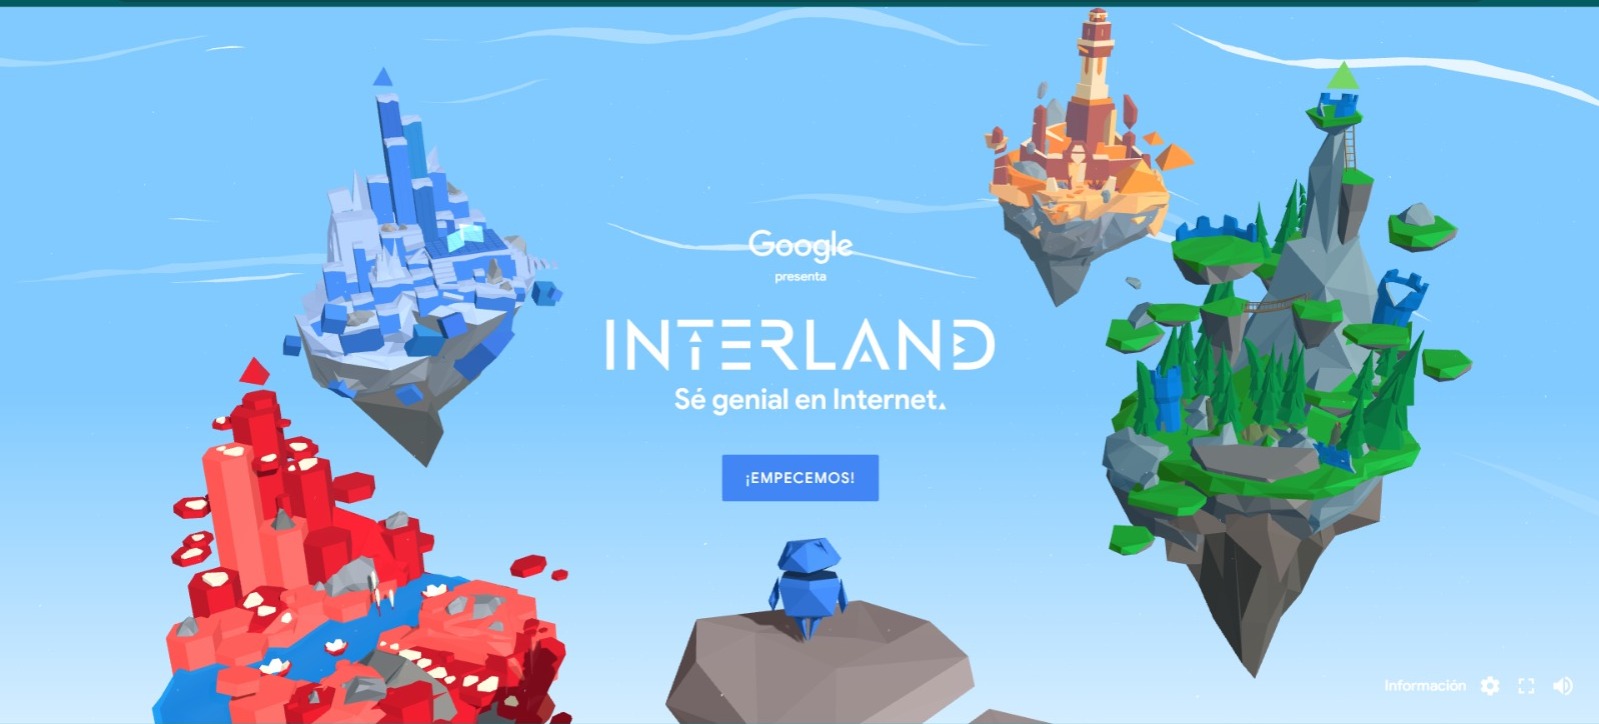 Interland, el juego de Google para que los niños aprendan sobre ciberseguridad